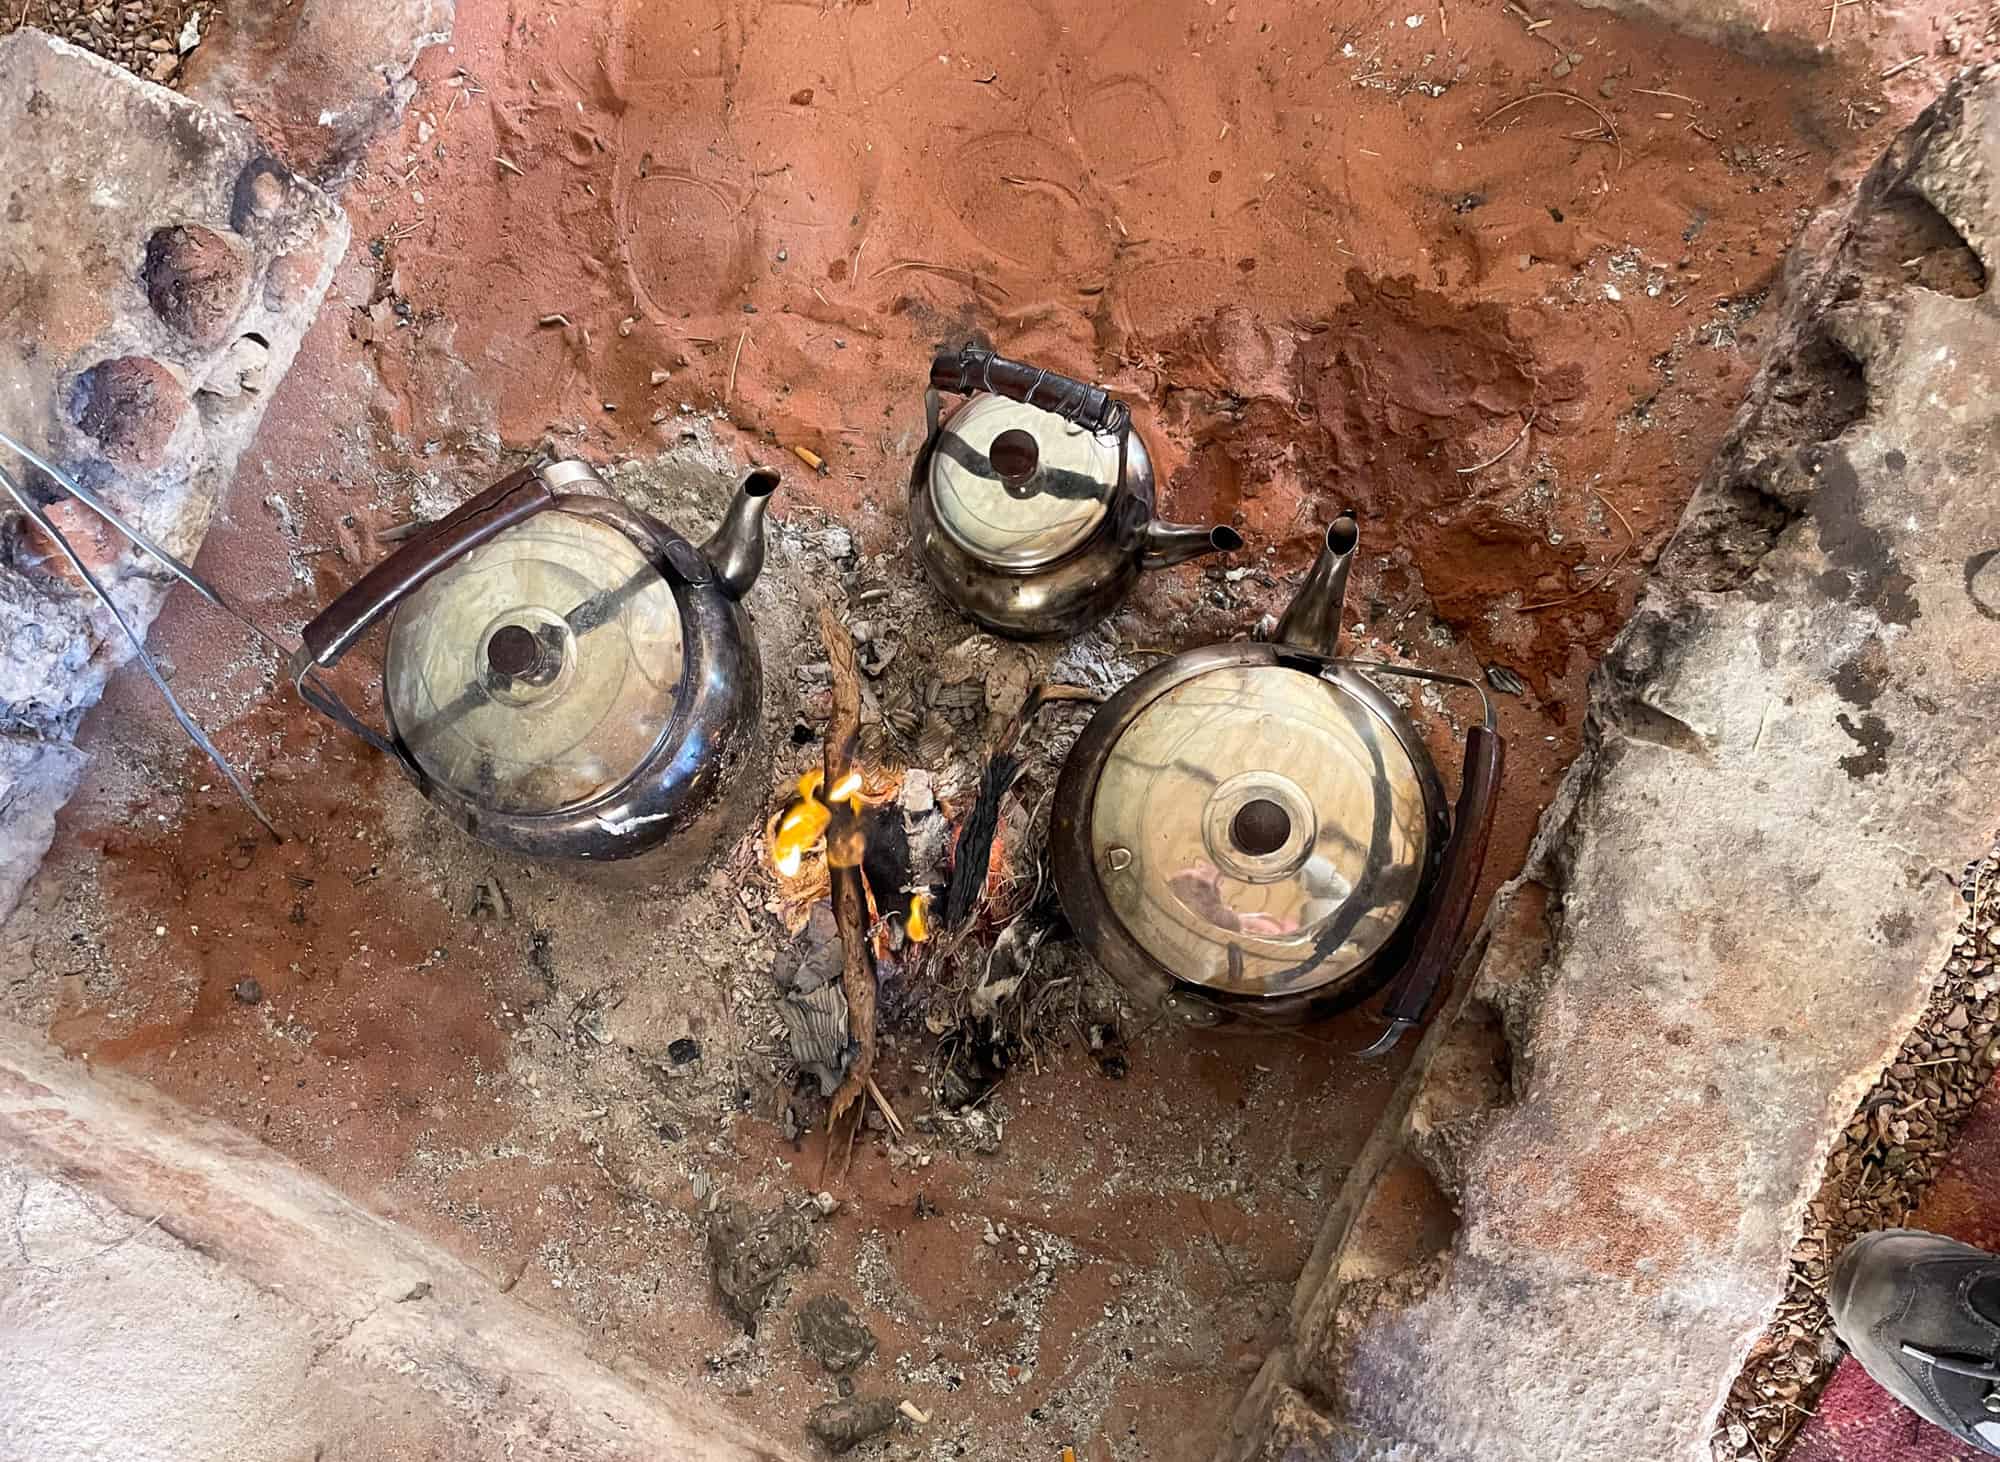 Jordan - Wadi Rum - Coffee pots on open fire